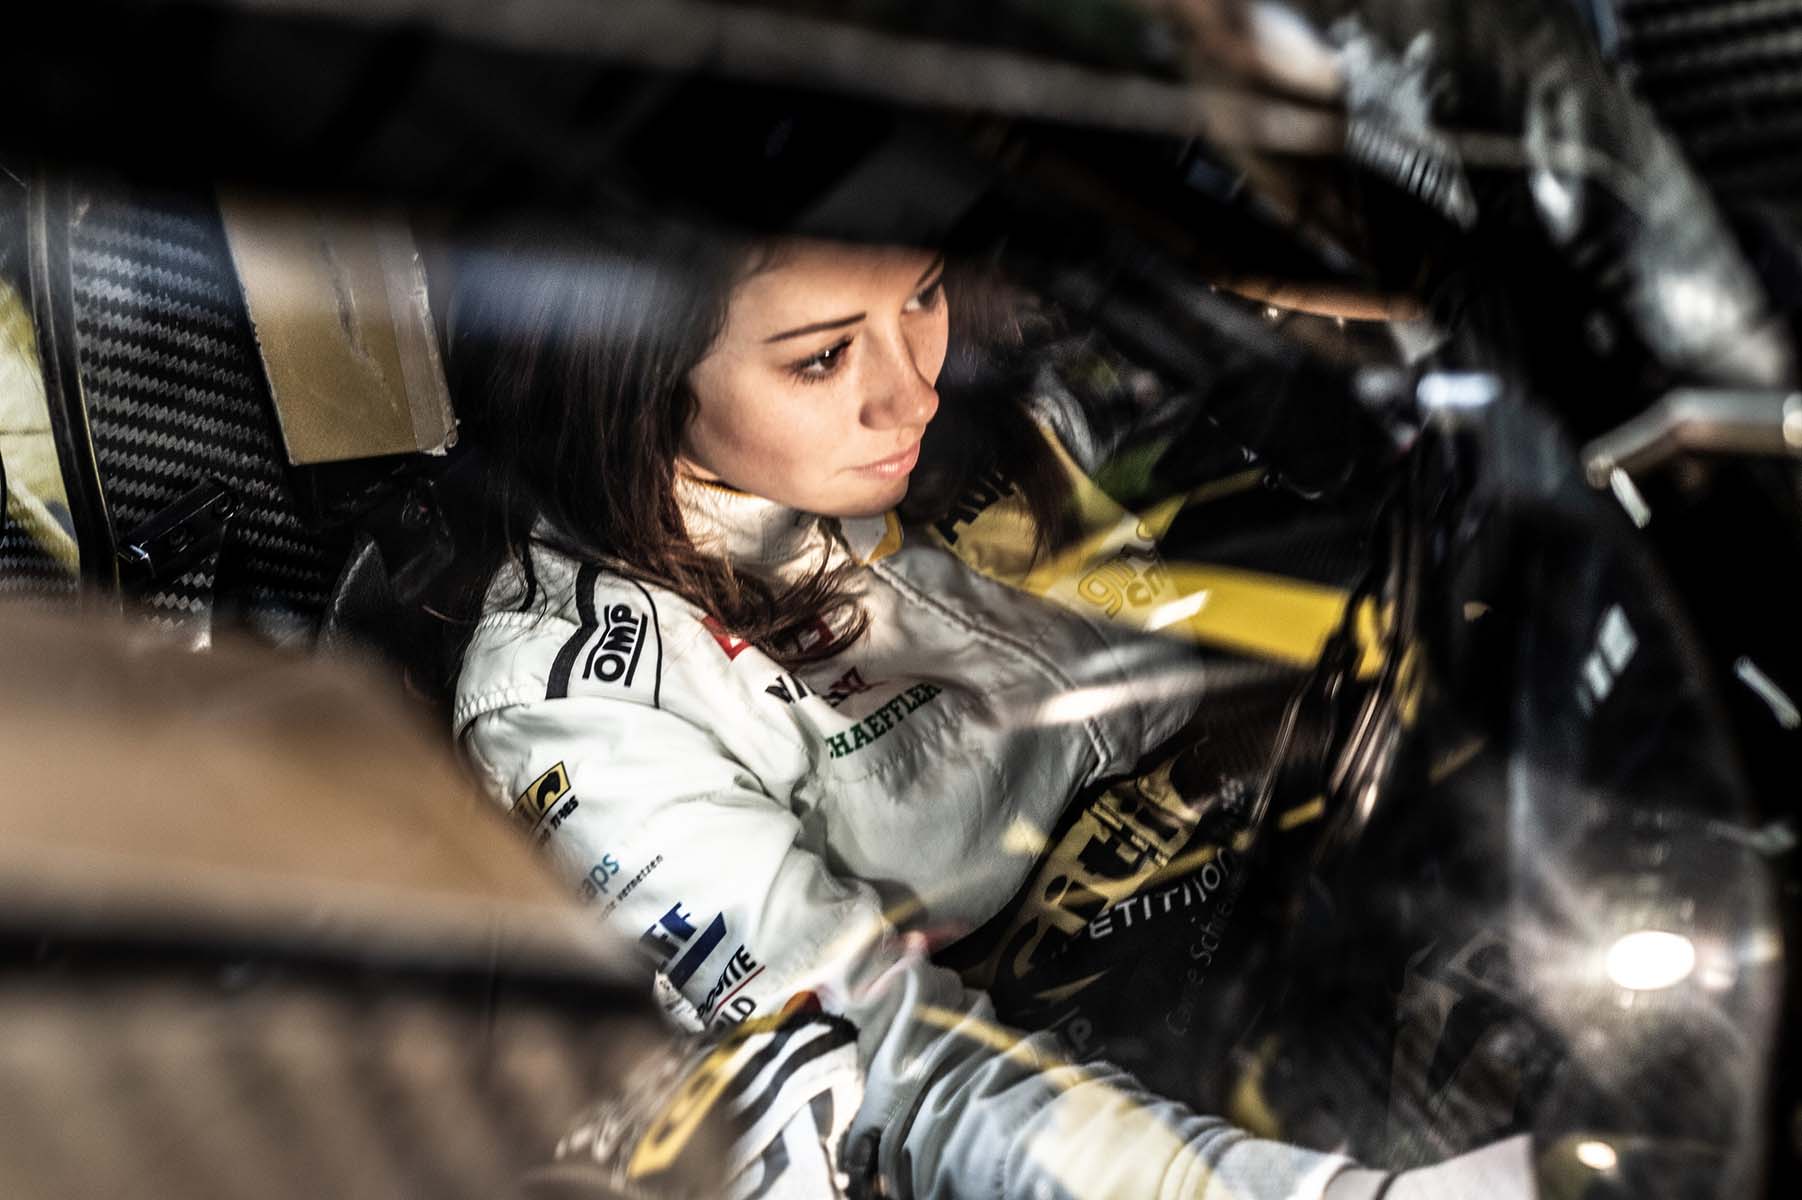 Portraits von Carrie Schreiner als F1 Academy Pilotin im Sauber / Strake Team